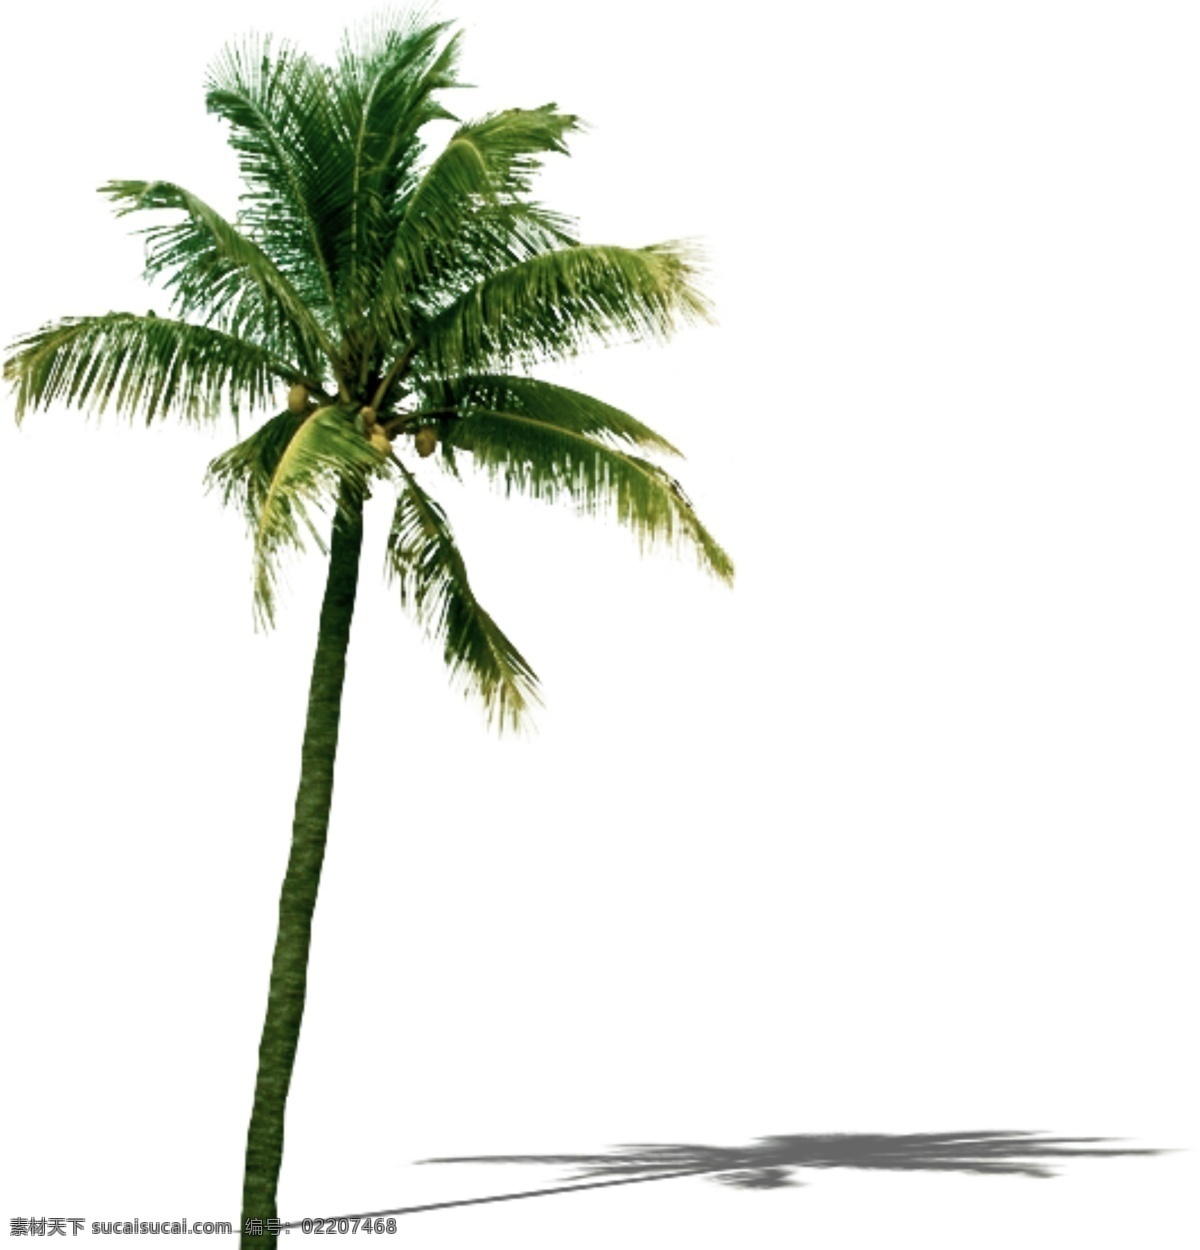 3d 室外 效果图 环境 椰子树 分层 后期素材 源文件 植物 植物素材 模板下载 各种植物 后期 原创设计 原创装饰设计